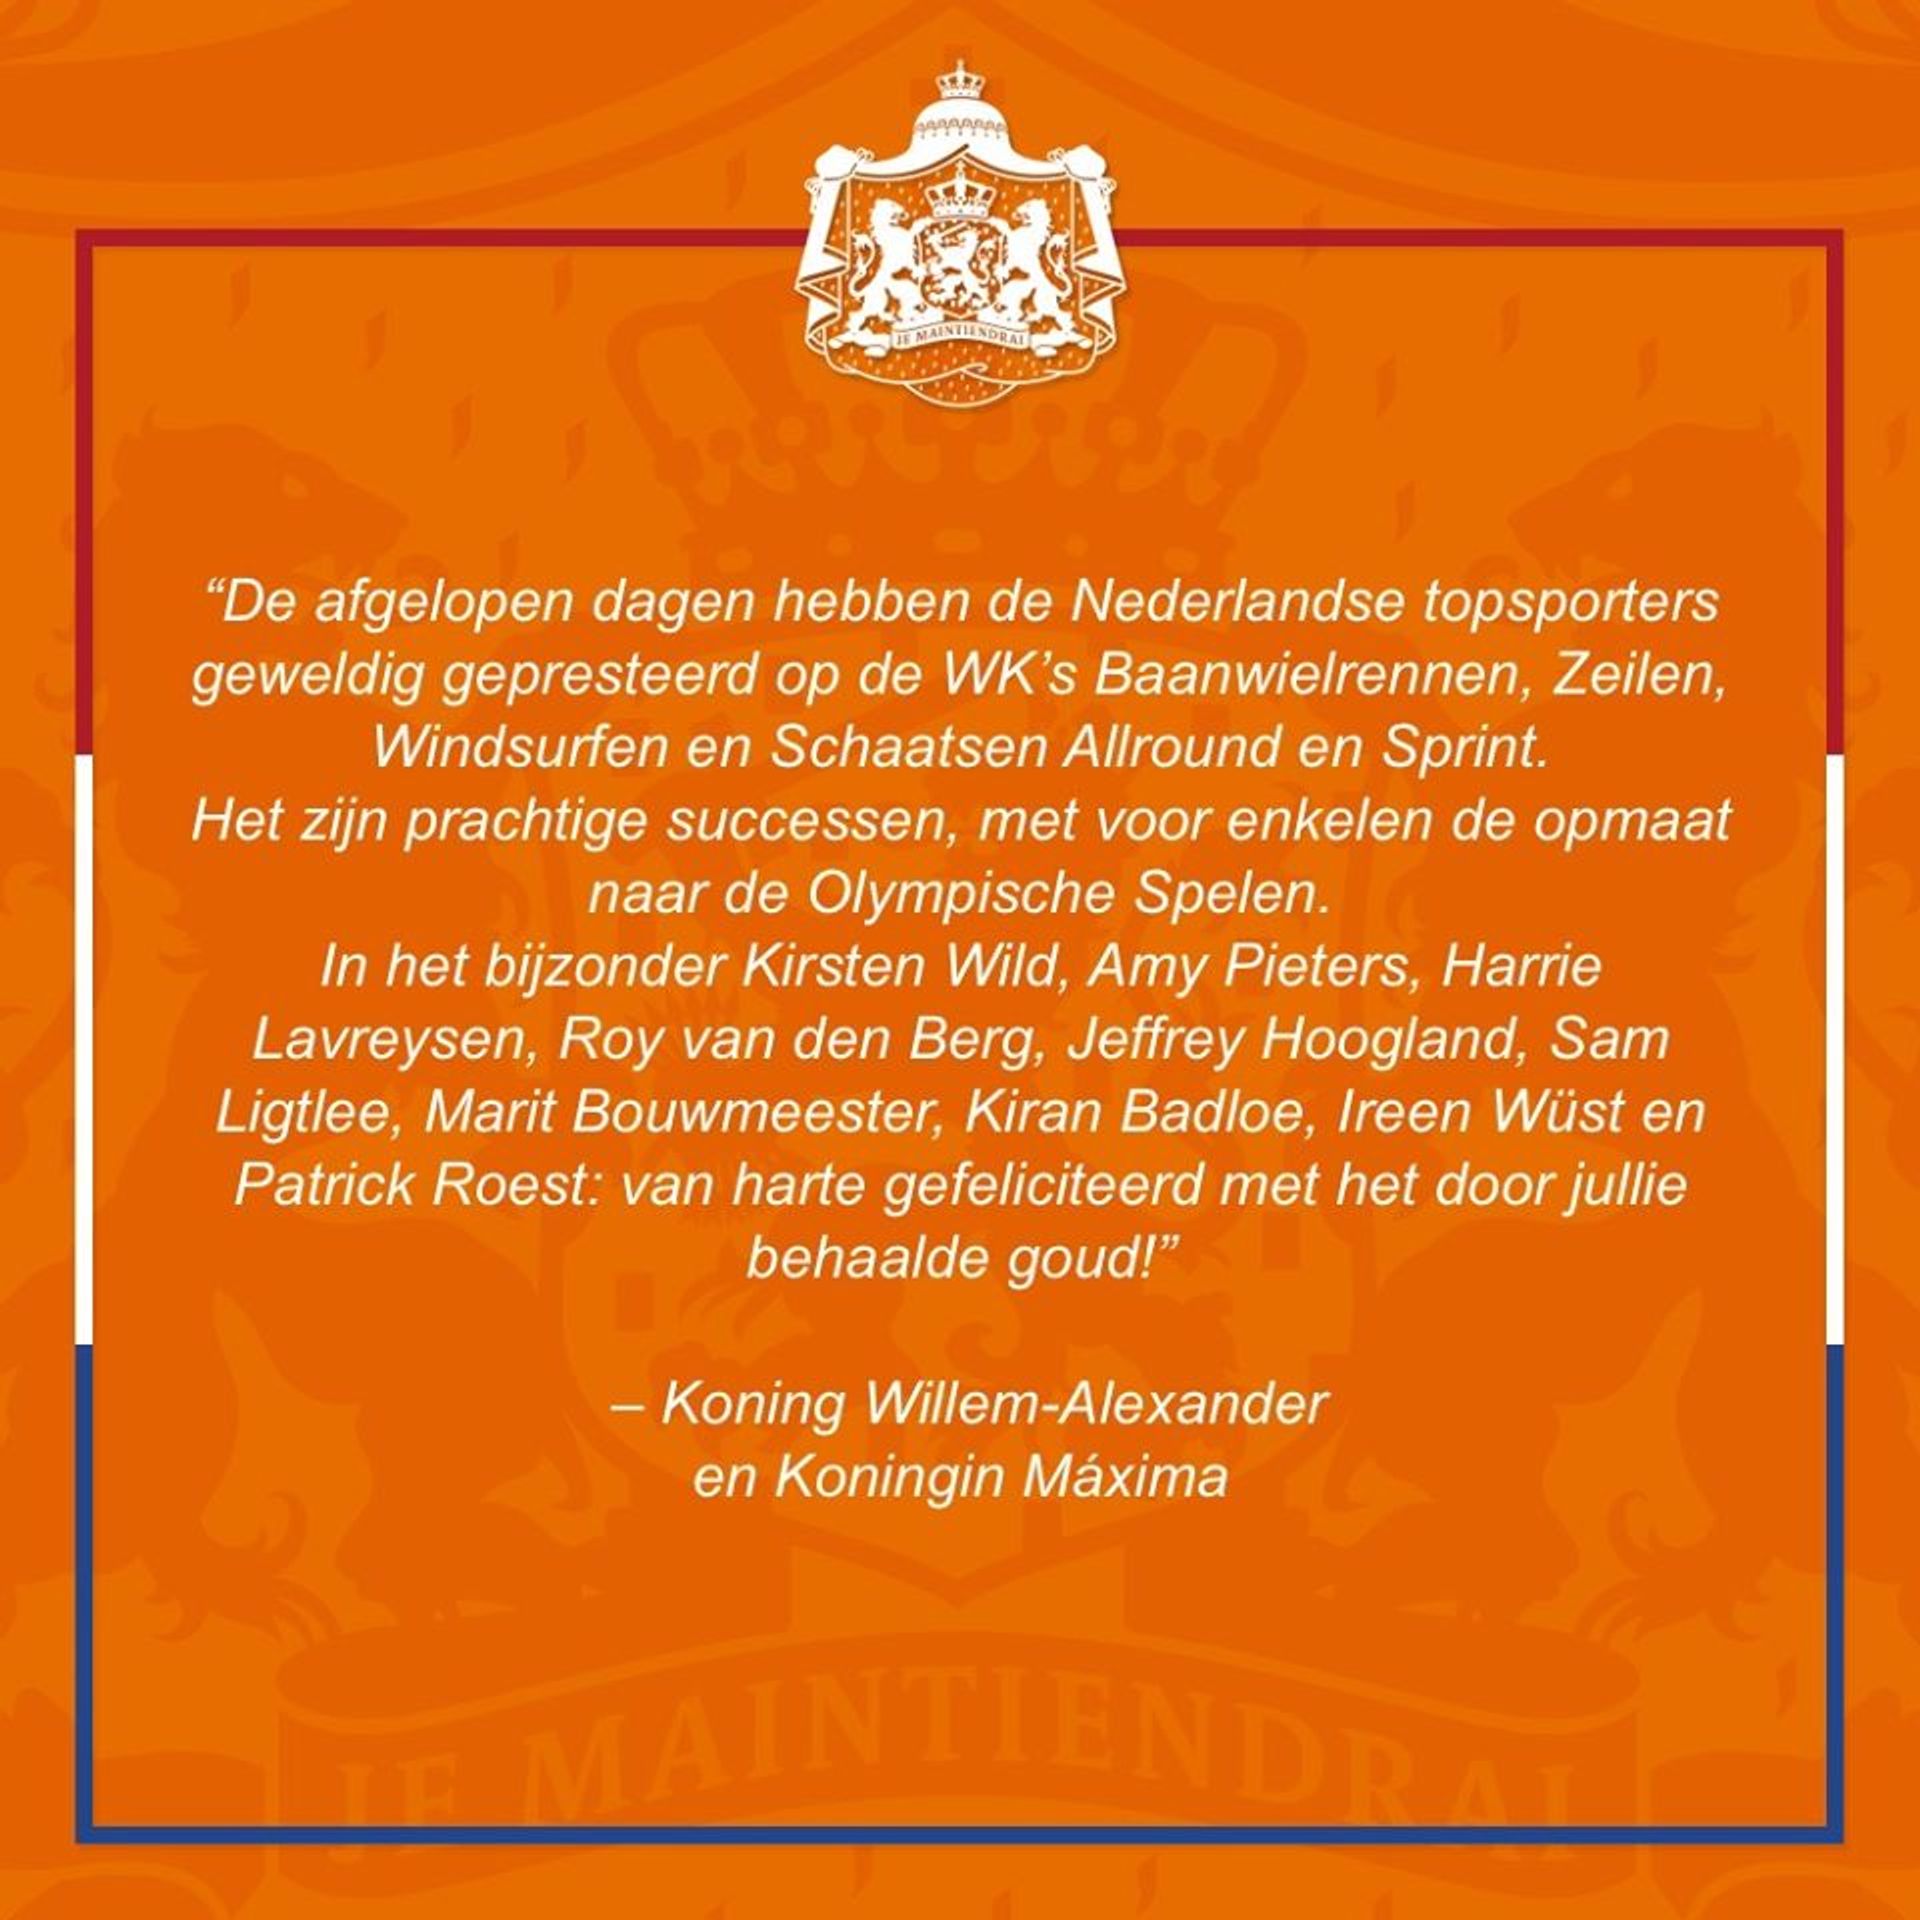 Felicitatie_van_koningspaar_aan_sporters.jpg